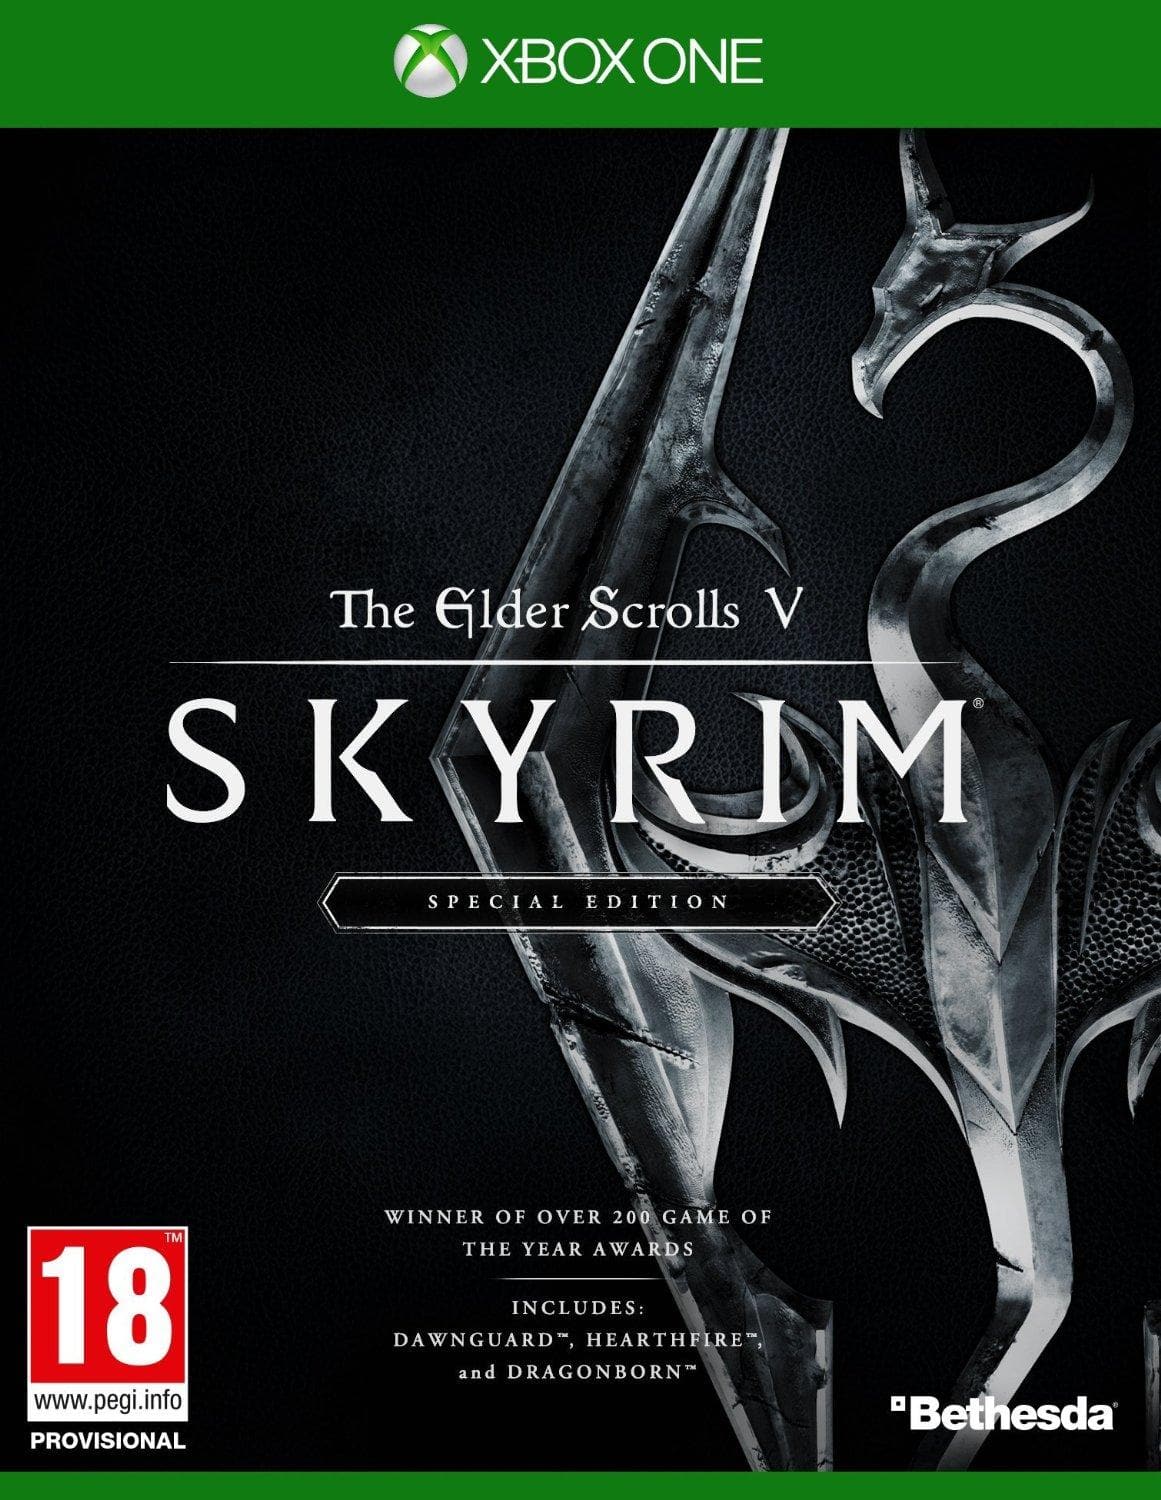 The Elder Scrolls V: Skyrim (Special Edition) - Xbox One | Series X/S - EXON - גיימינג ותוכנות - משחקים ותוכנות למחשב ולאקס בוקס!